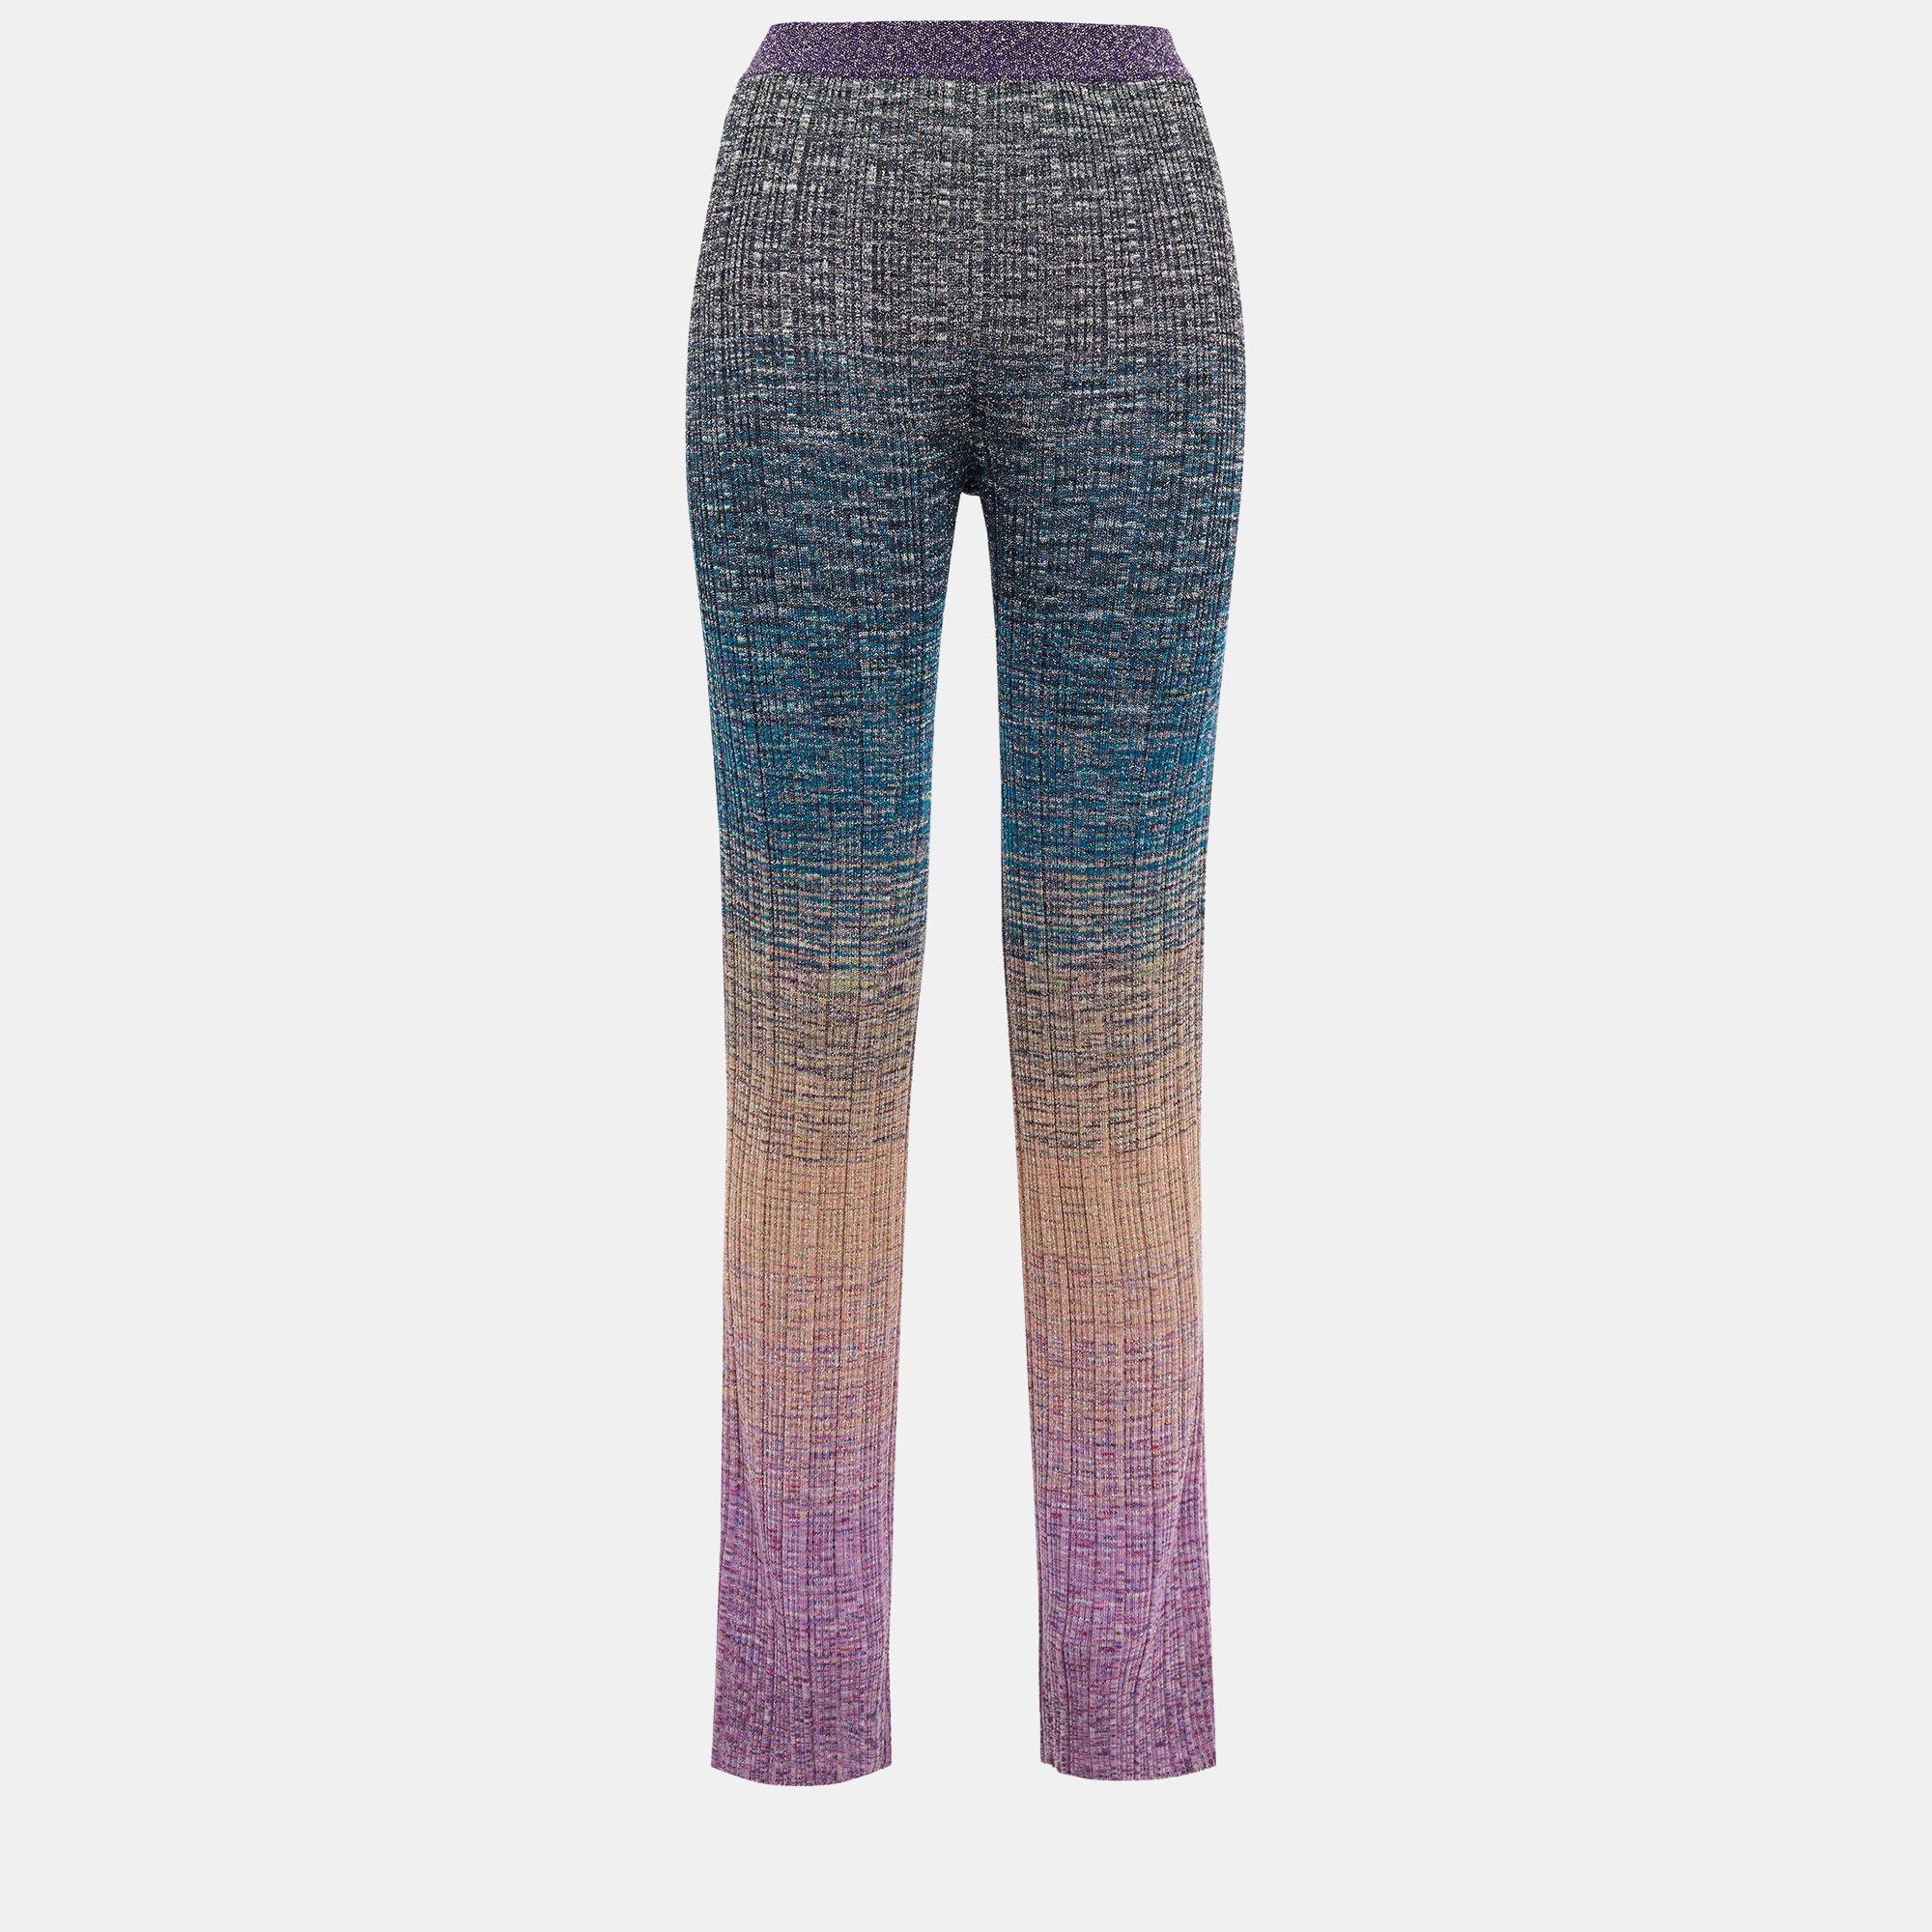 Missoni multicolor lurex knit pants xl (it 46)